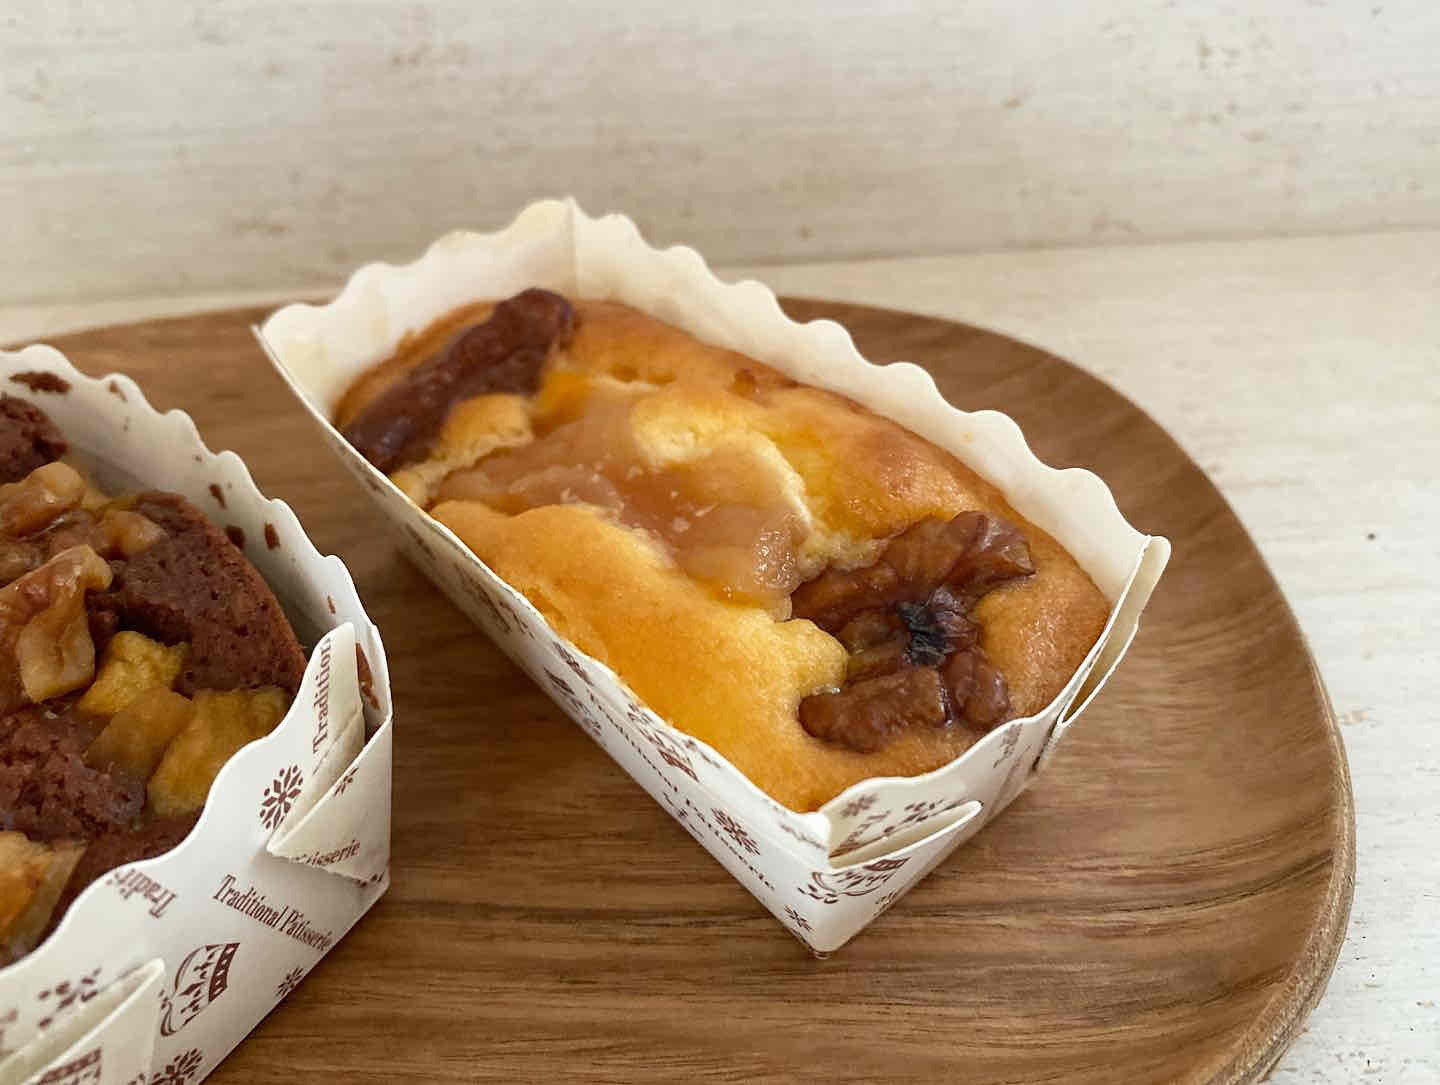 「りんごとくるみのバターケーキ」¥260(以降すべて税込価格)